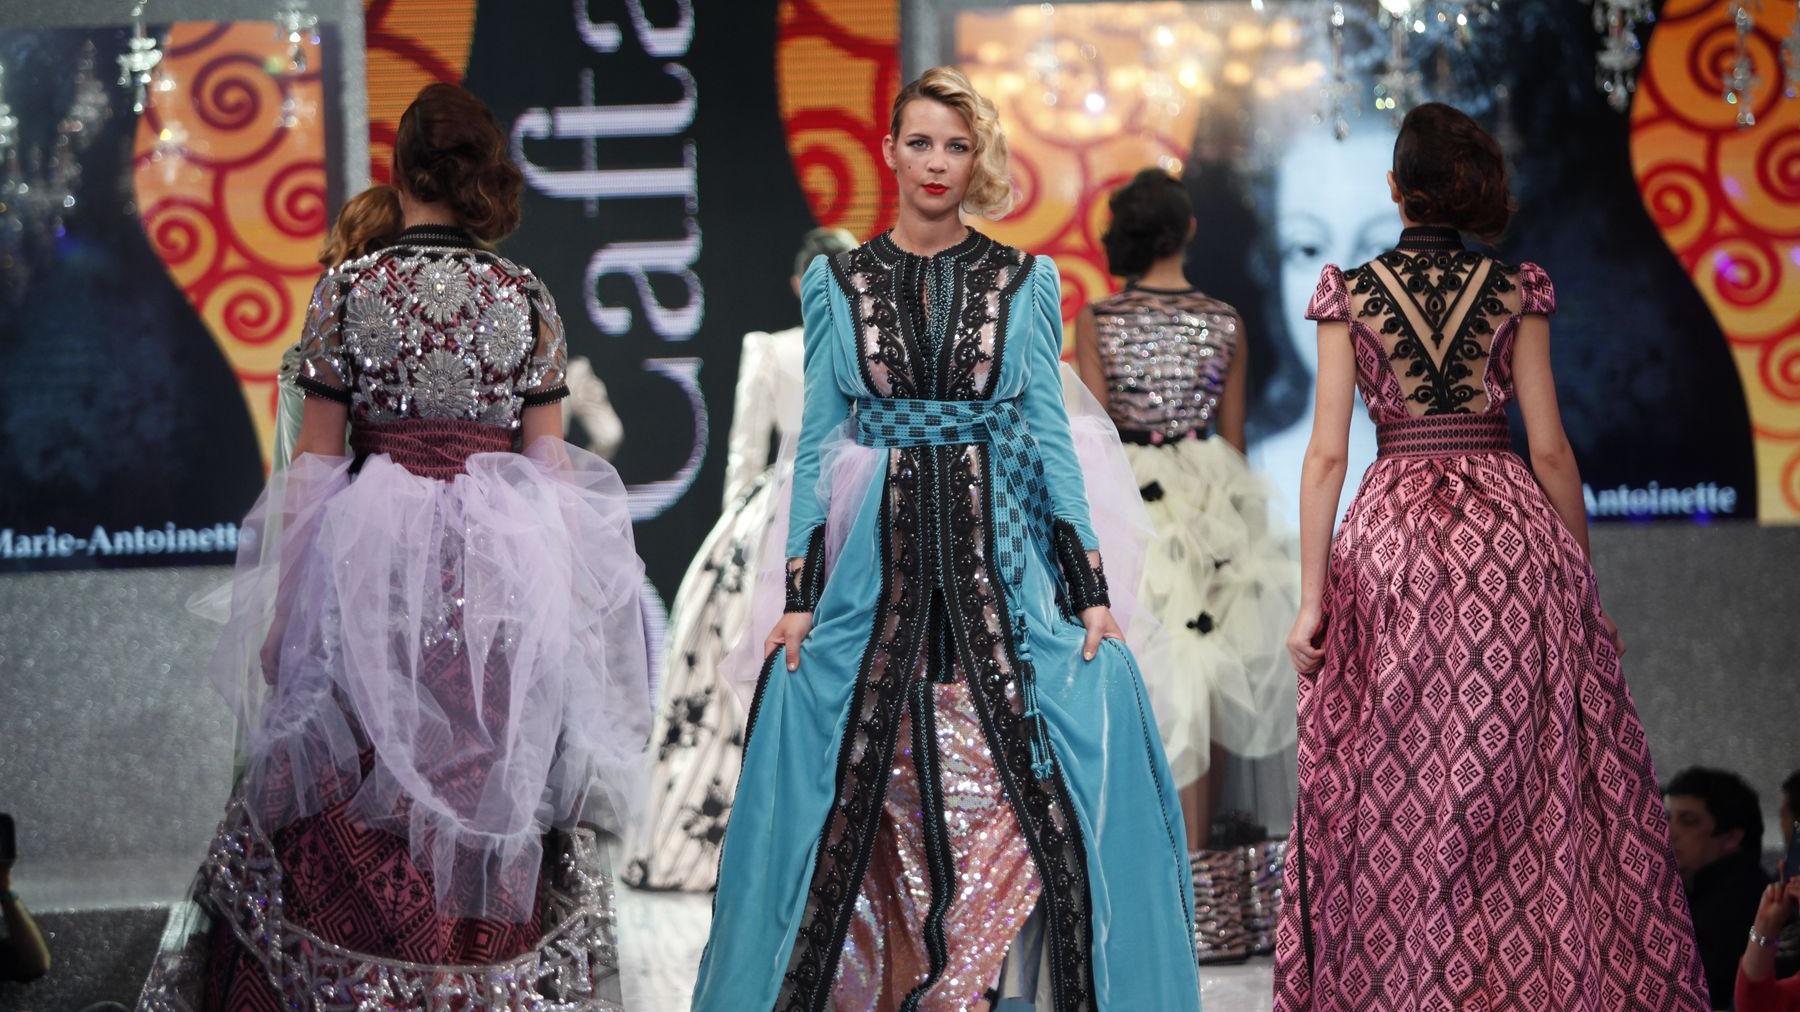 La haute couture marocaine retrouve un tout nouveau style grâce aux créations de Mohamed Lakhdar.
